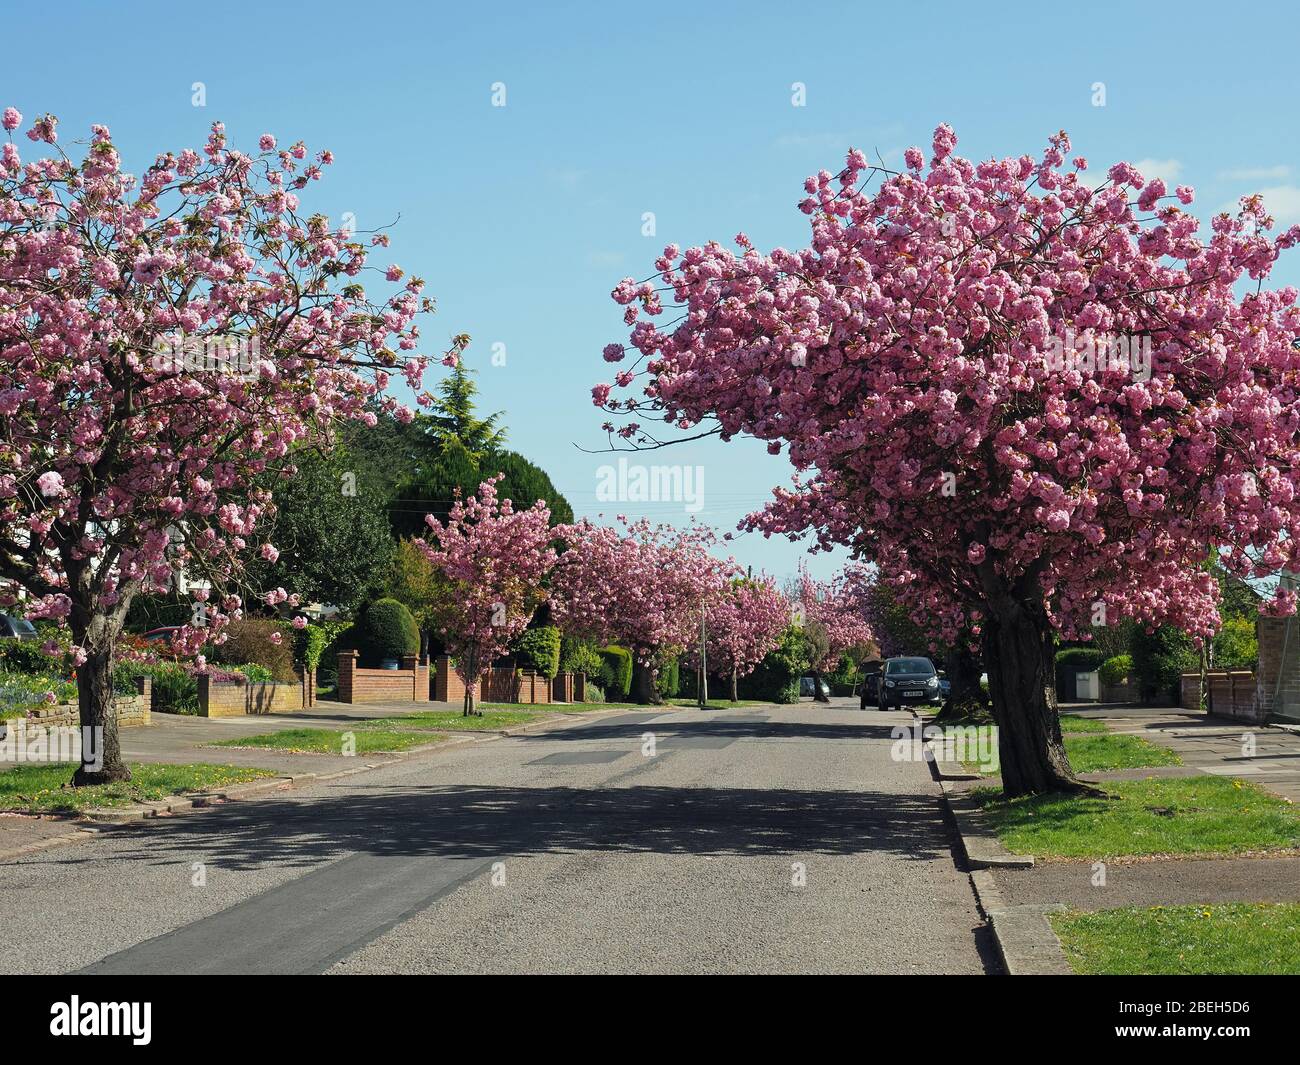 Vue sur de magnifiques cerisiers à fleurs roses bordant une route lors d'une journée ensoleillée d'avril au printemps Banque D'Images